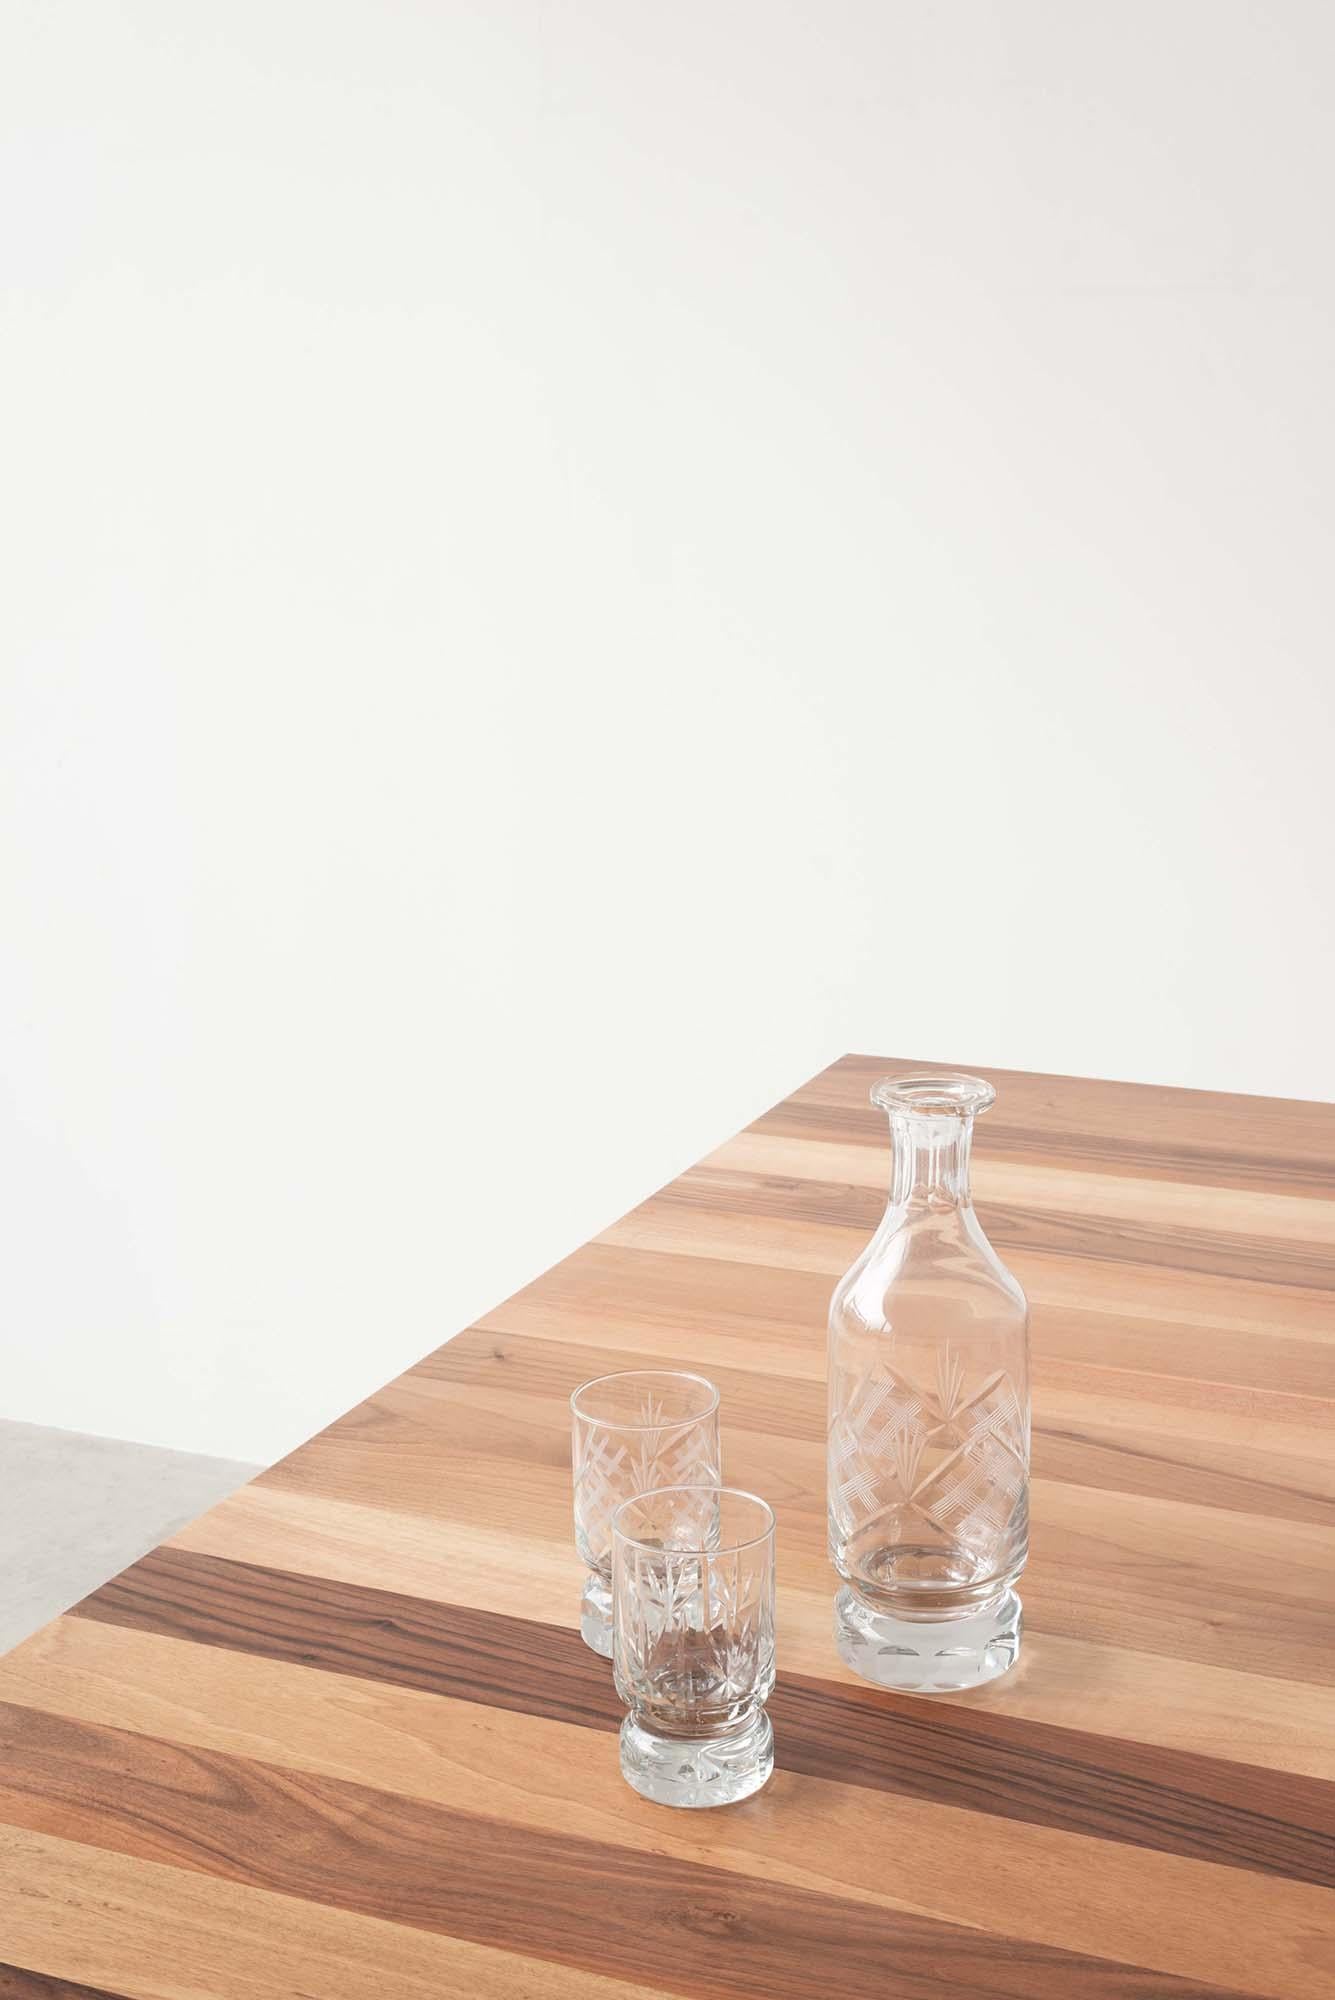 Vier dünne lackierte Metallbeine tragen eine massive Platte aus europäischem Nussbaum.
Eine quadratische Form der Tisch hält ein einfaches Design mit einer naiven und strengen Linie.

Designer: Roberto Cicchinè.
 